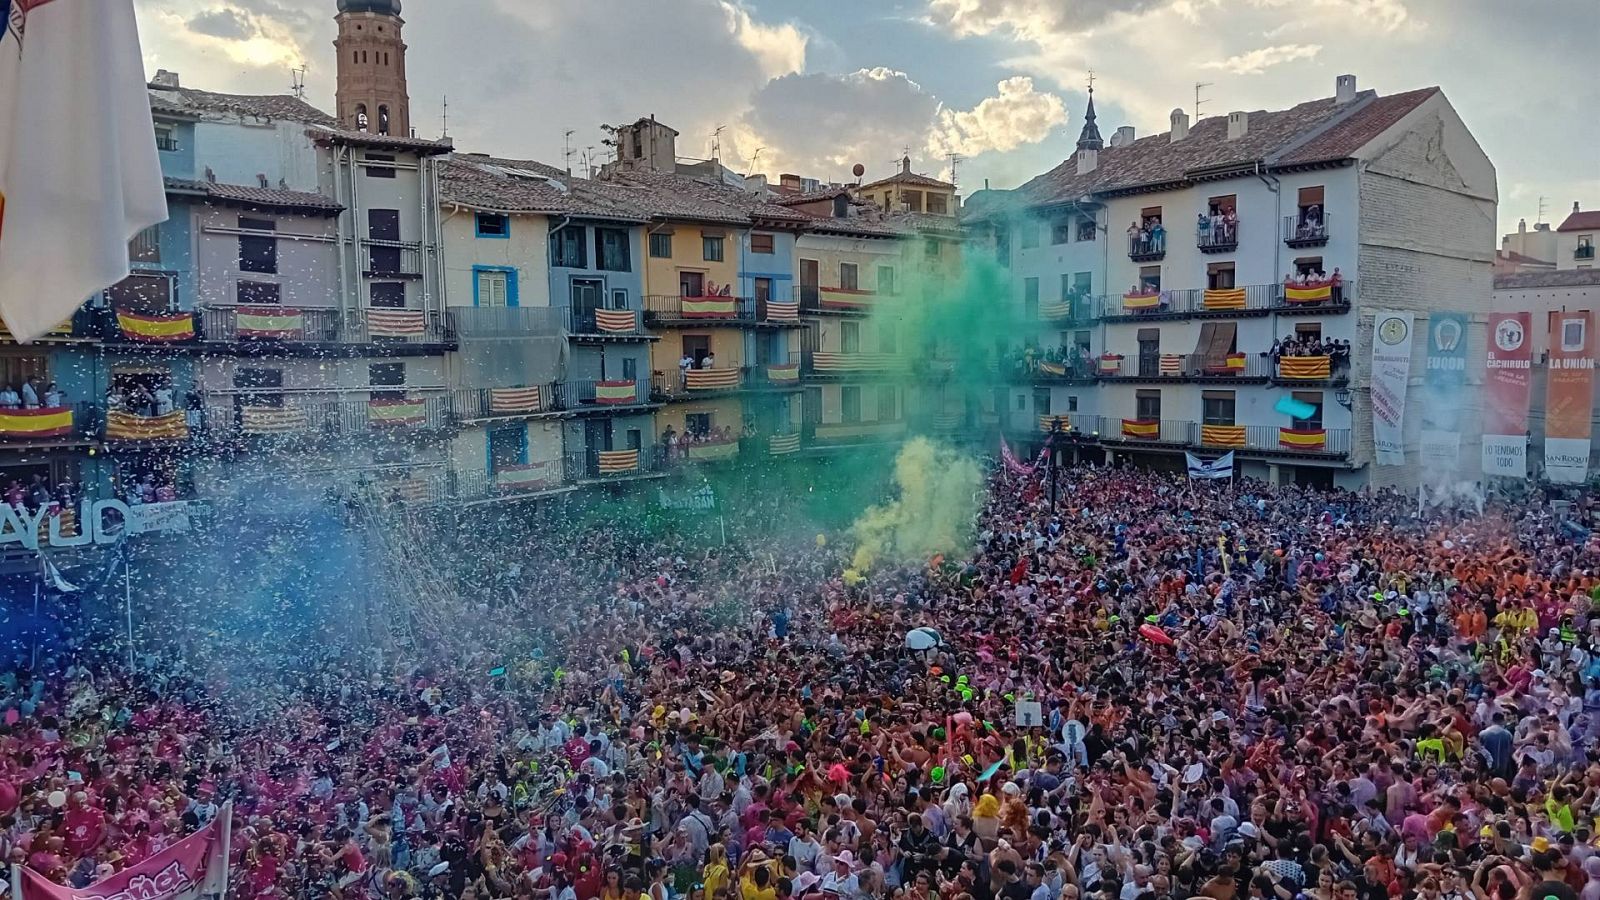 Las fiestas patronales toman las calles de muchos municipios y ciudades españolas estos días